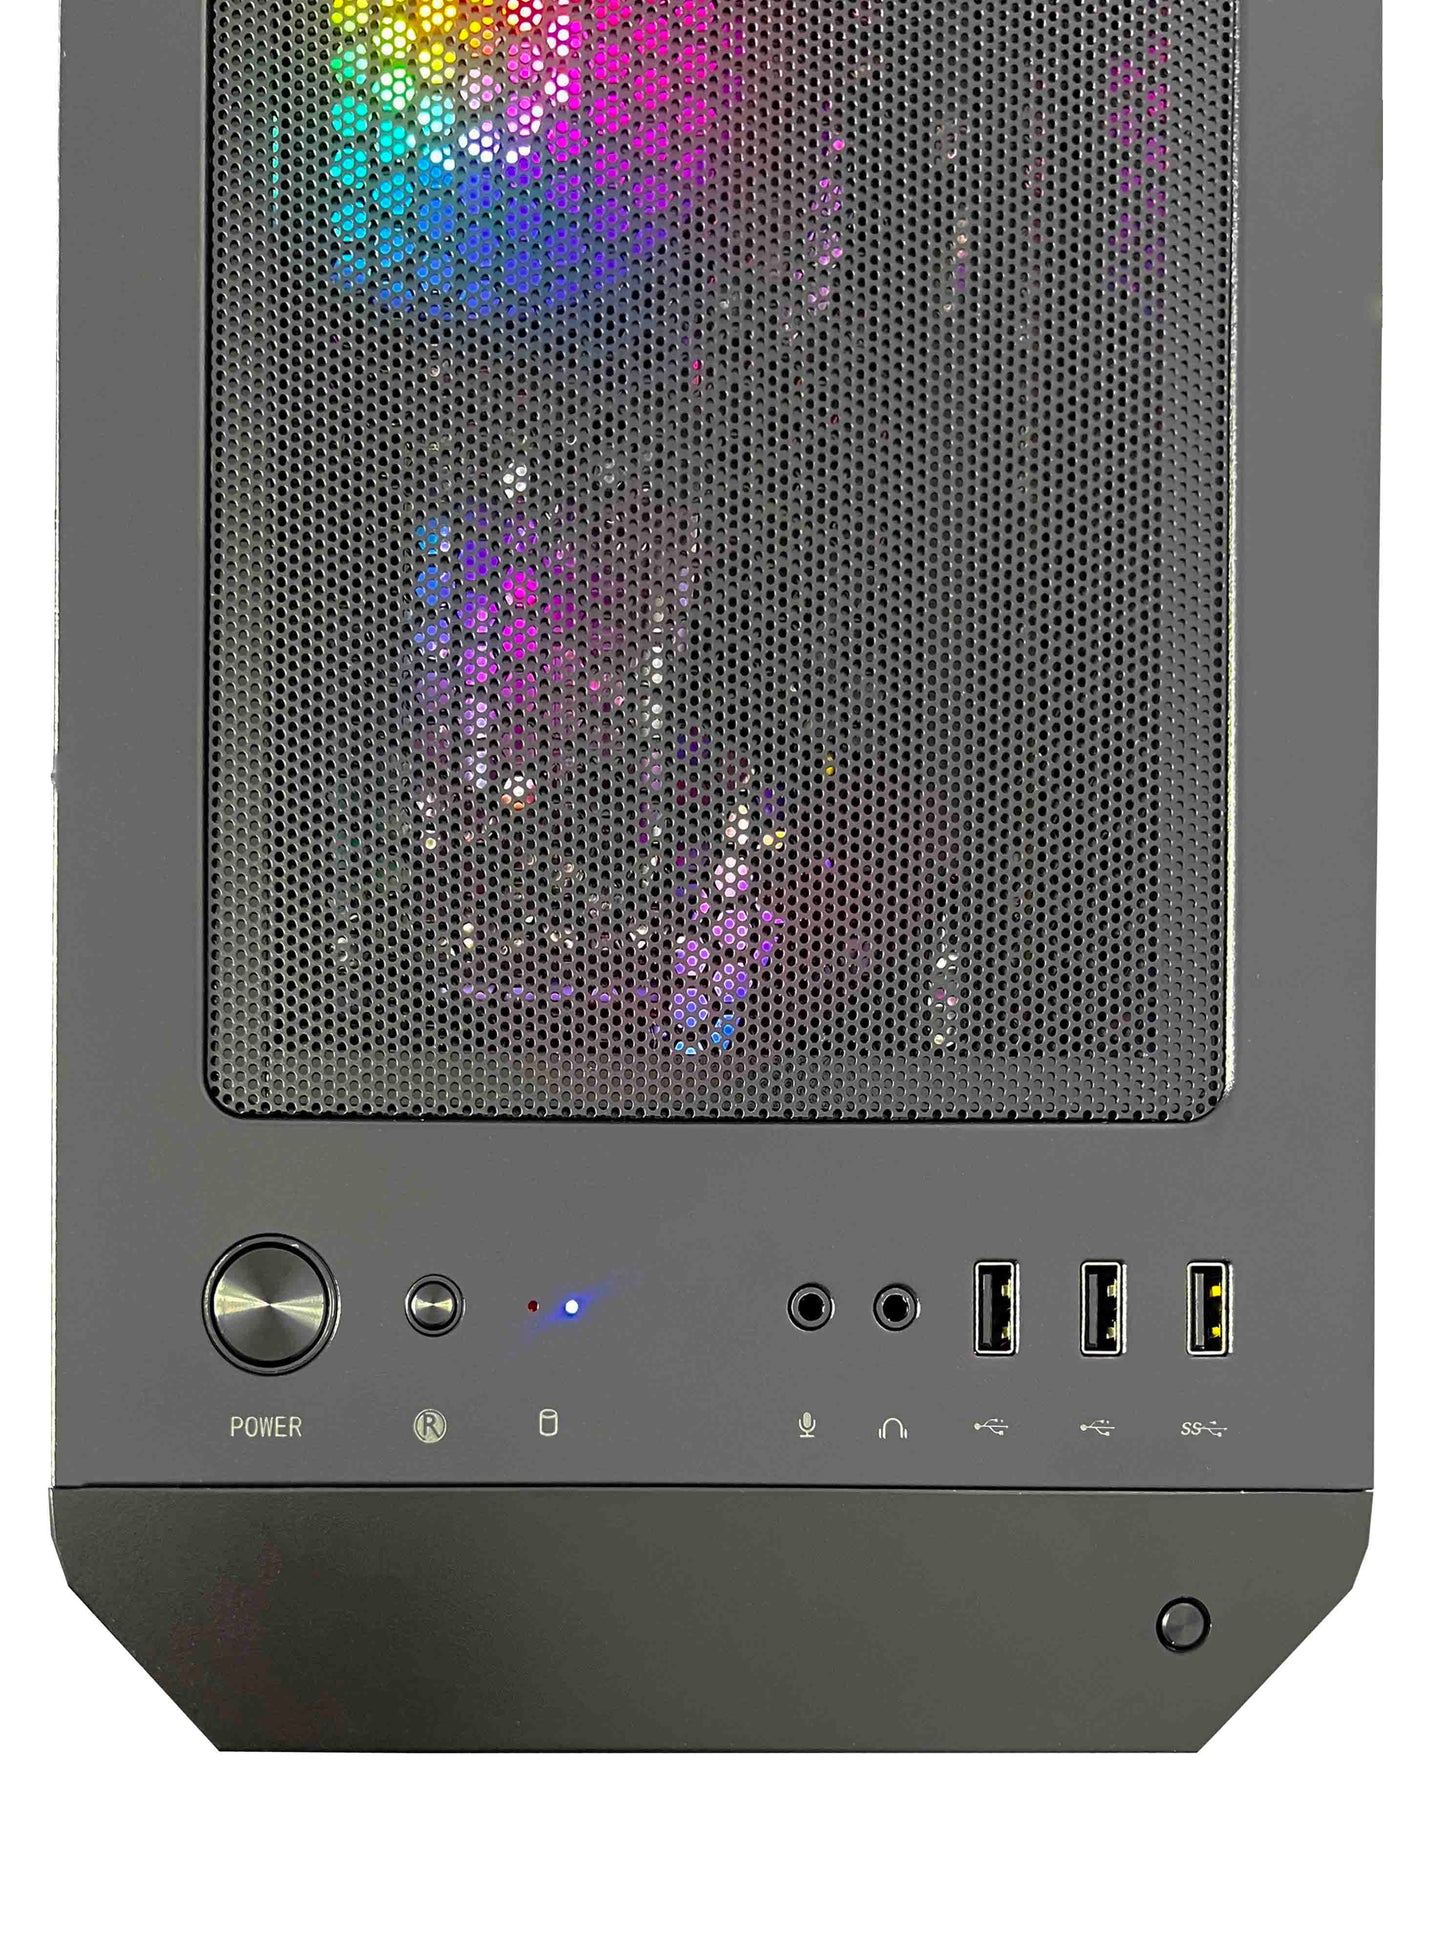 Computadora de escritorio para juegos NSX GAMING (Ryzen 7 5700G, 16GB DDR4 3600, 512Gb M2 NVME SSD, ventiladores RGB, Win 10 Home de 64 bits)